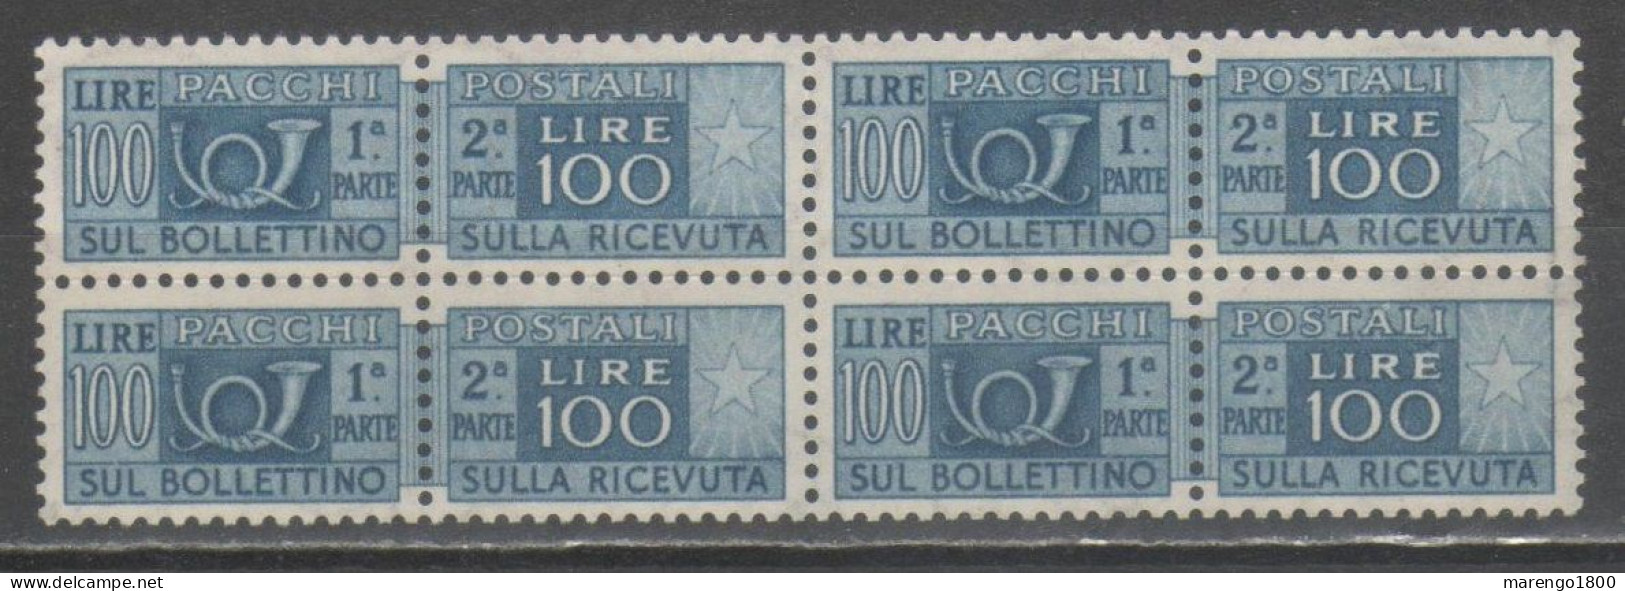 ITALIA 1946 - Pacchi 100 L. ** Quartina (2 Scan - Gomma Scura)             (g9640) - Pacchi Postali